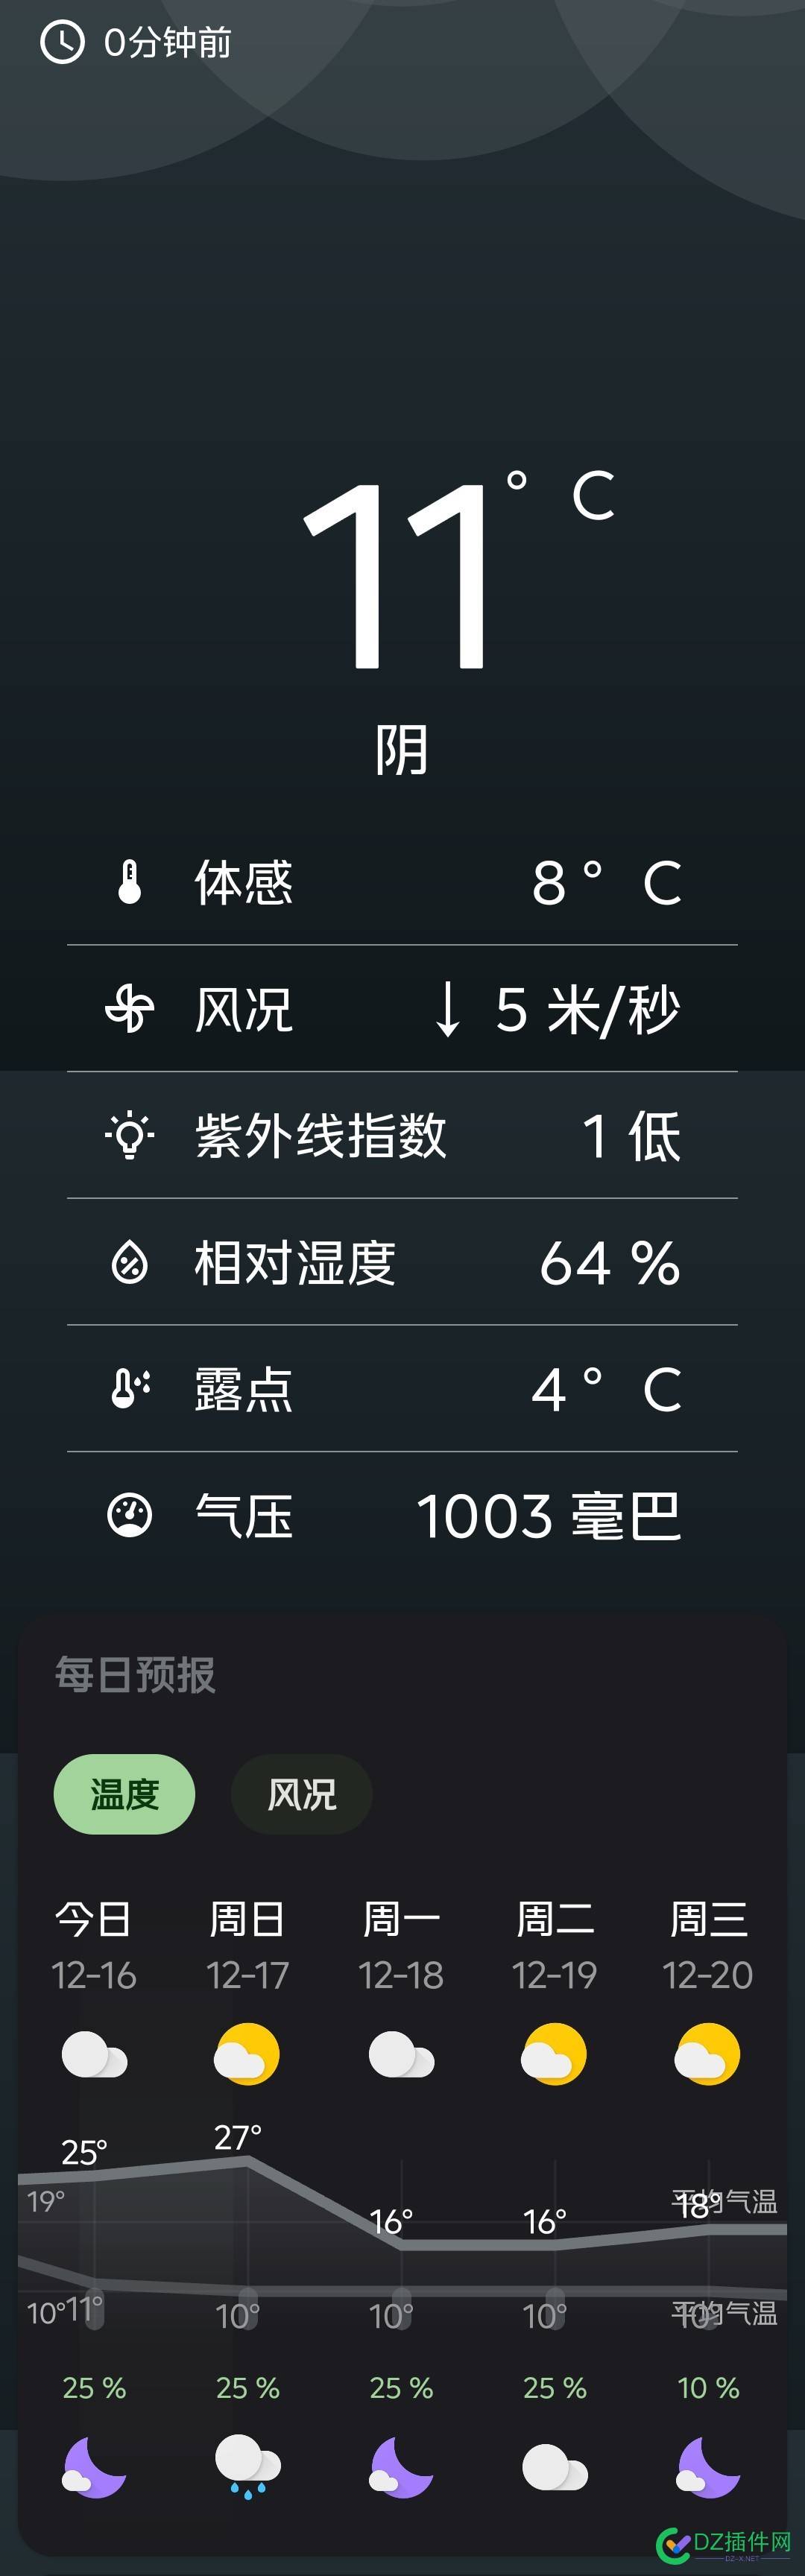 广东今天开始进入冬天 mjj,广东,骤降,保暖,气温